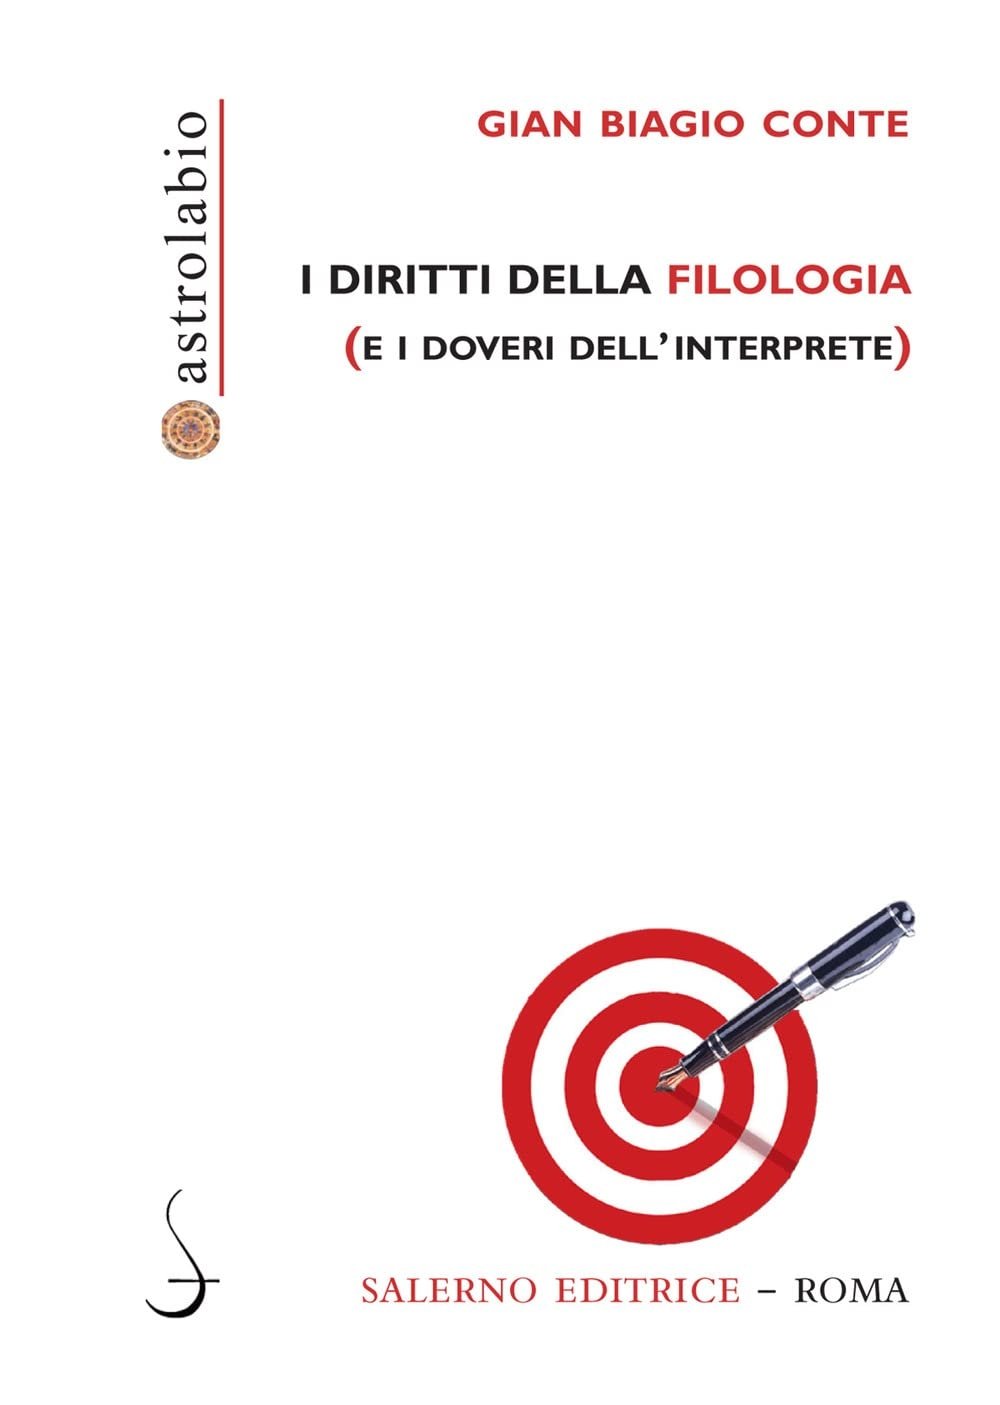 Gian Biagio Conte – I diritti della filologia (e i doveri dell'interprete) (Salerno Editrice, Roma 2022)